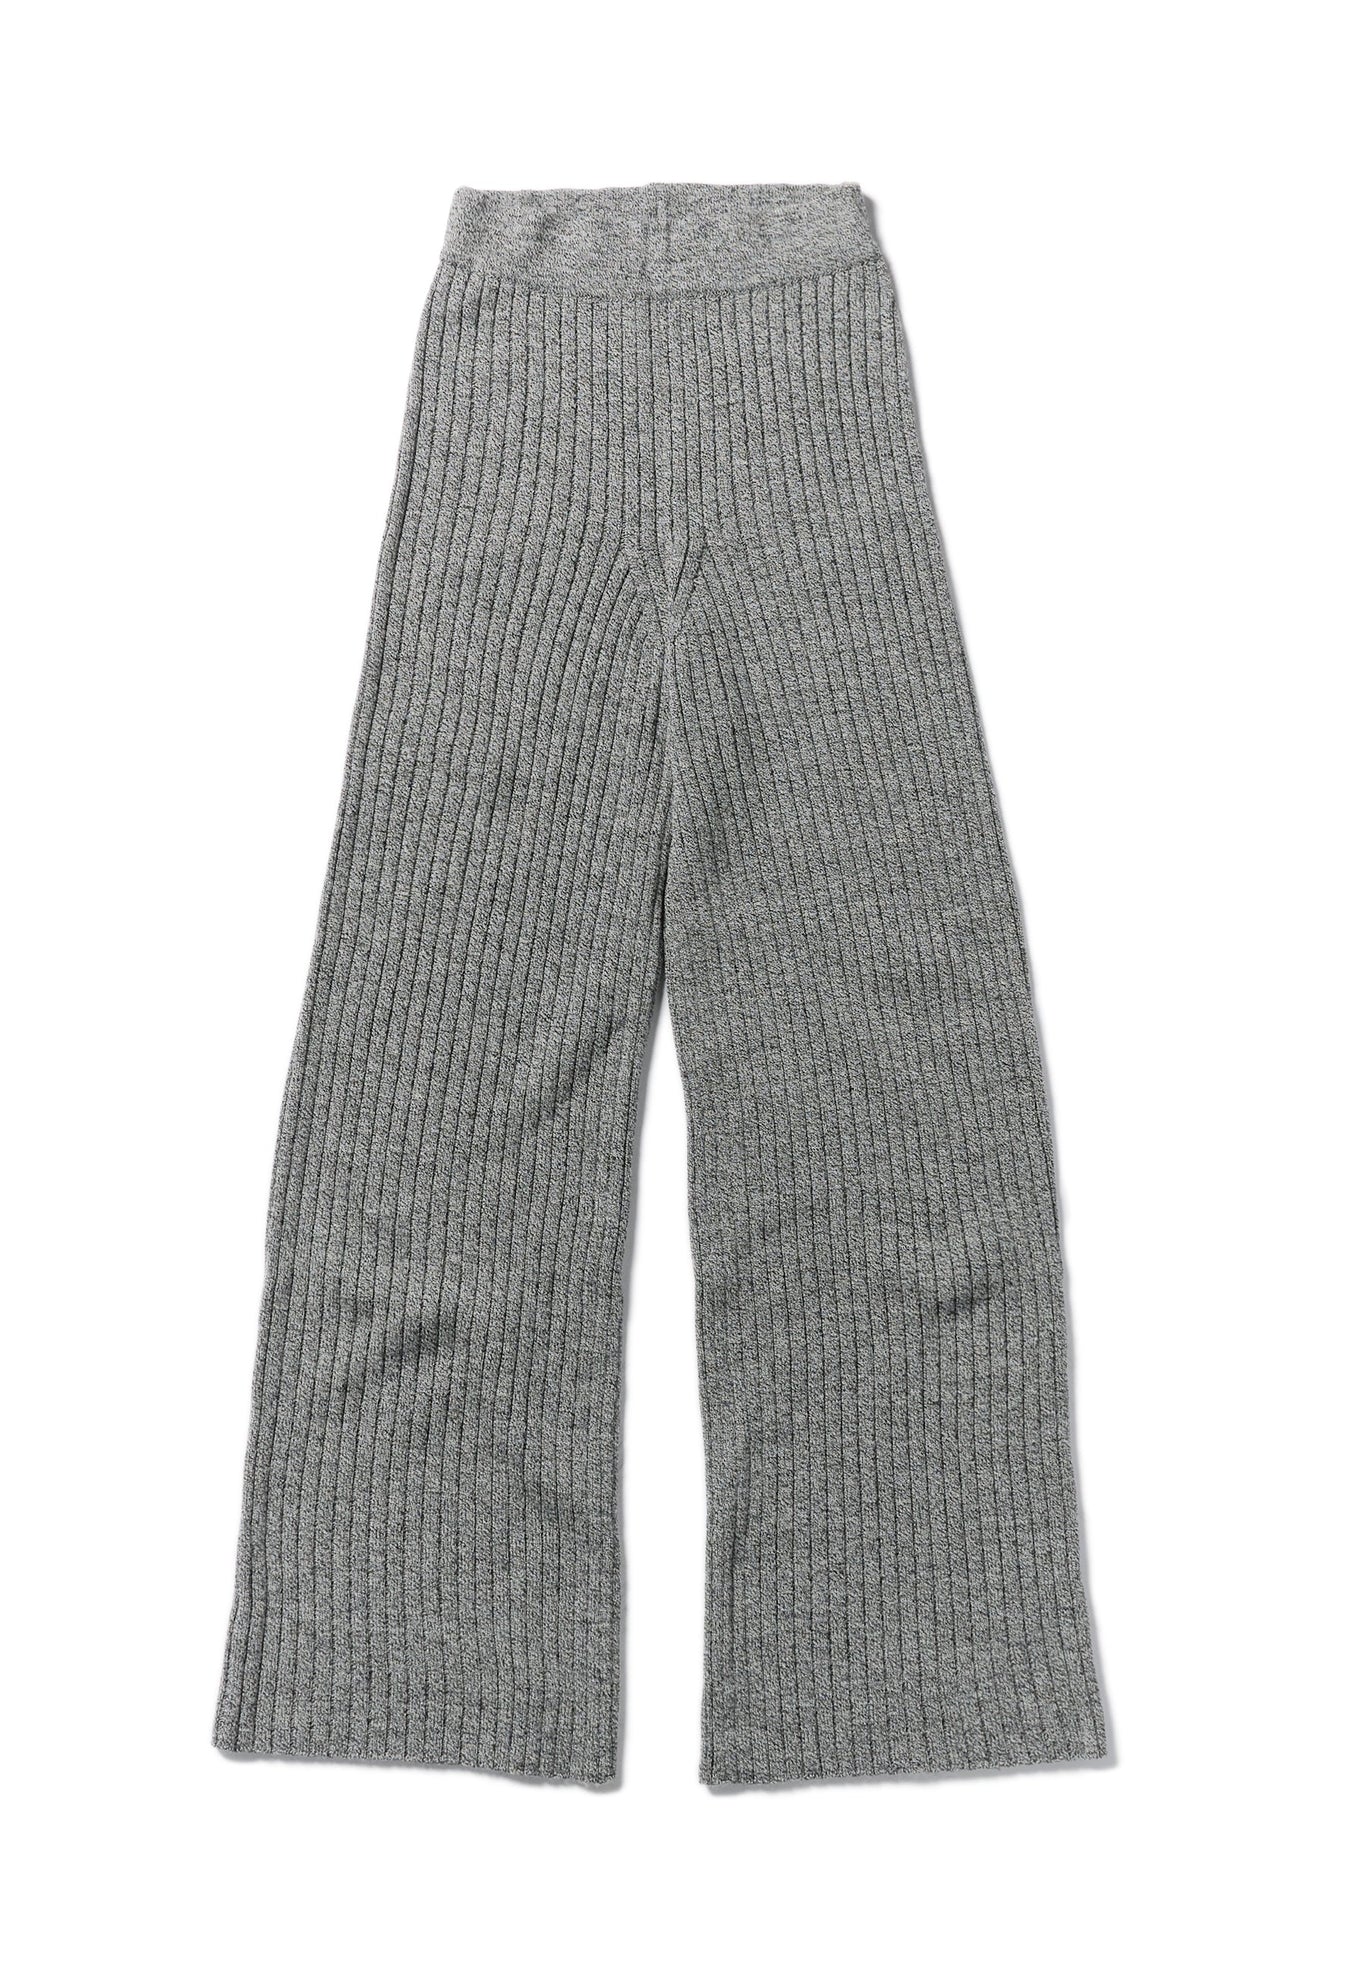 Rhea Black & White Knit Pants